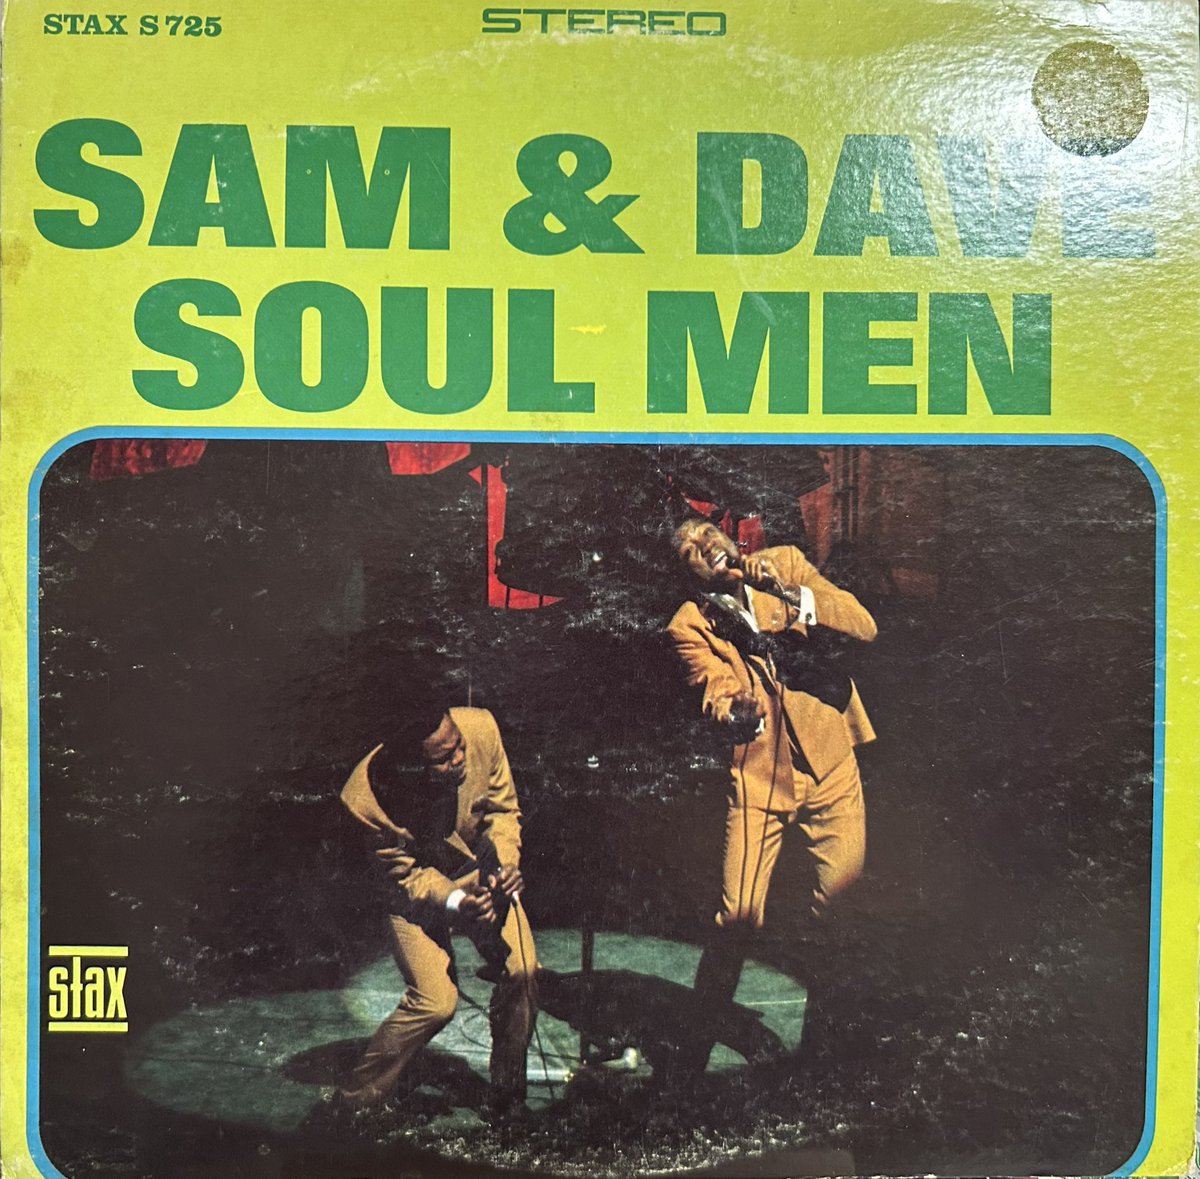 今日の1曲！
Sam & Dave,
May I Baby.
youtube.com/watch?v=-kqPer…
#southernsoul 
#staxrecords 
#soulman
#samanddave